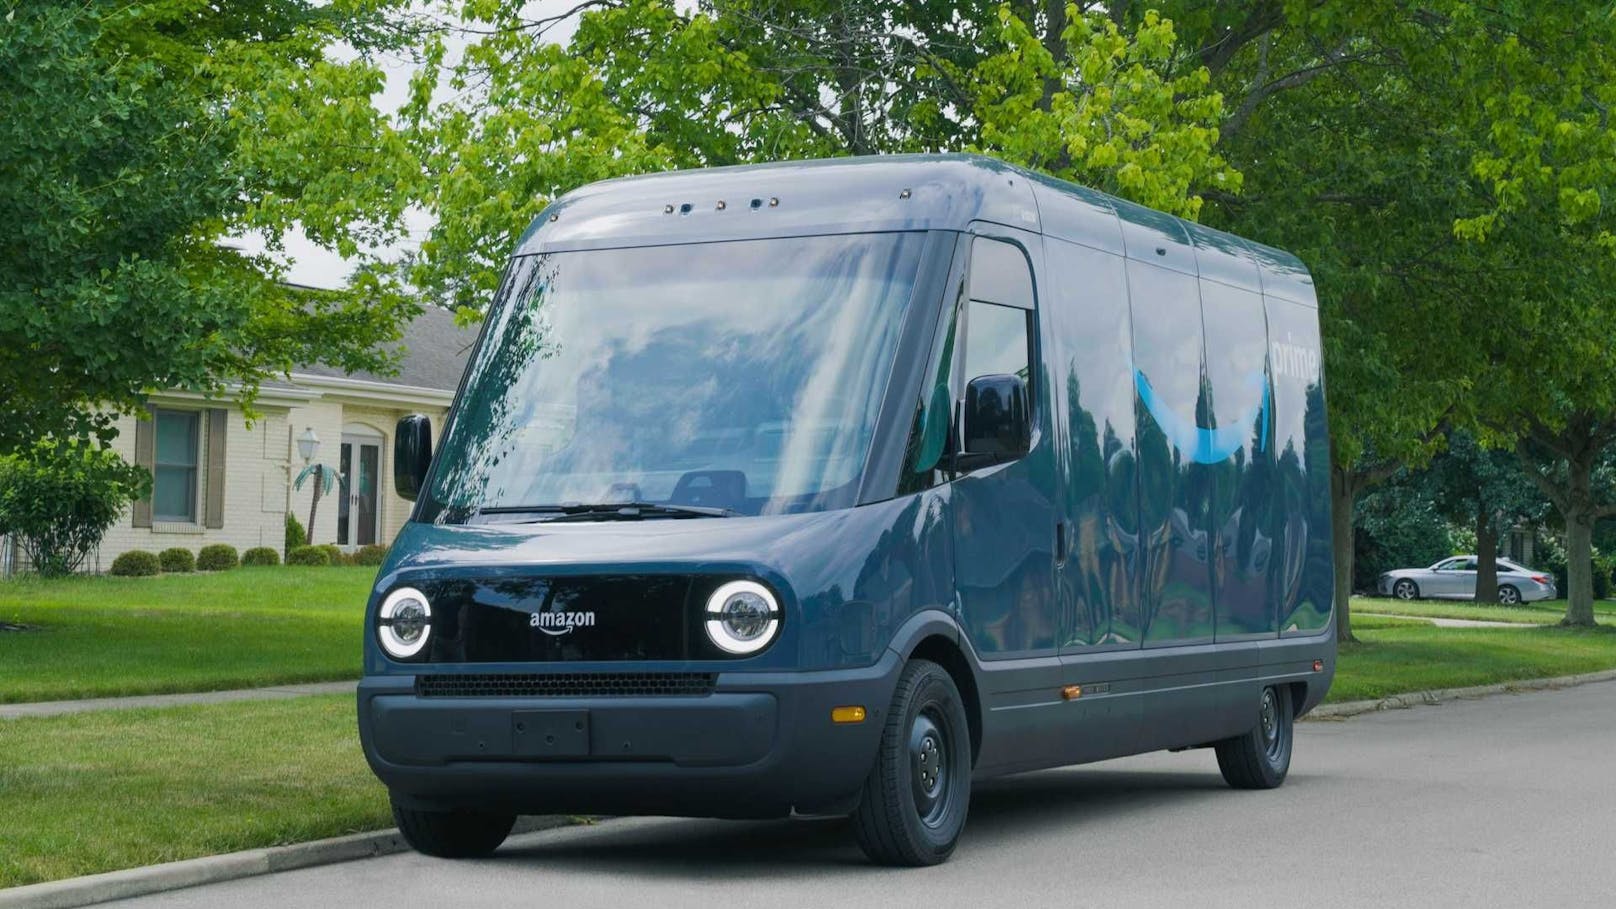 Rivian EDV (Electric Delivery Van) liefert in den USA bereits Pakete von Amazon aus.